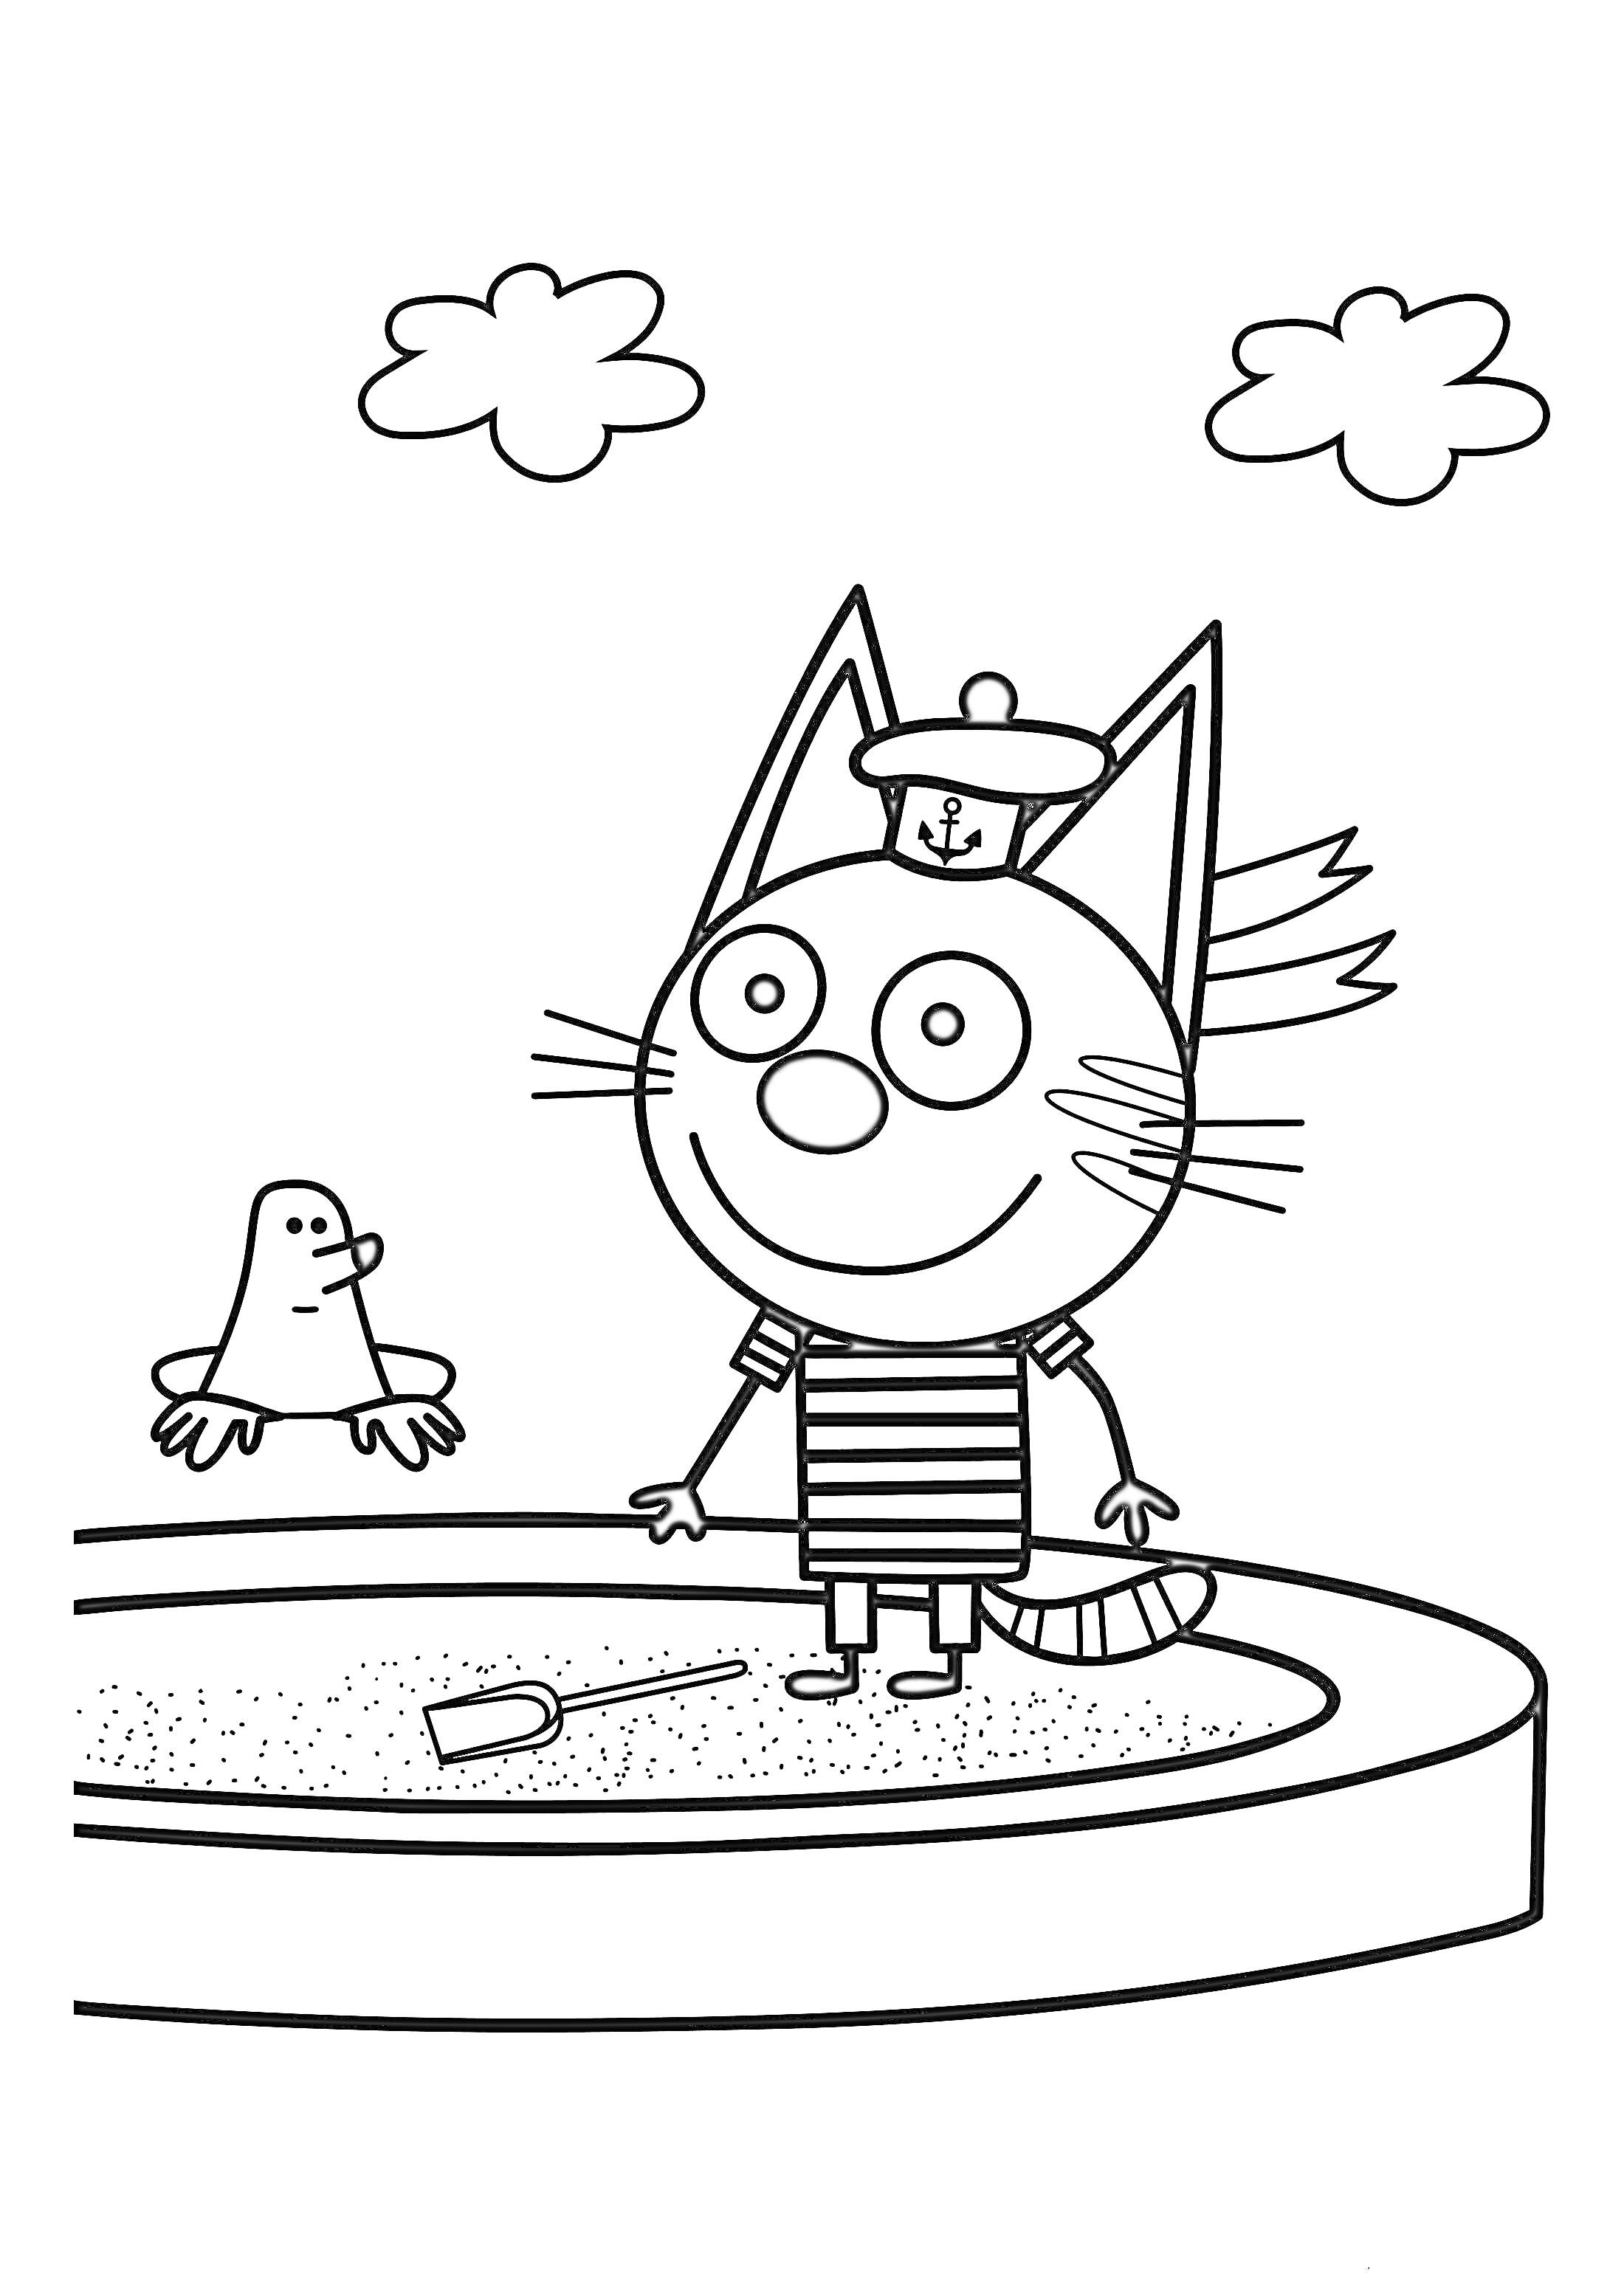 Раскраска Котёнок в полосатой футболке с корабликом, играющий в песочнице рядом с птичкой и двумя облаками на заднем плане